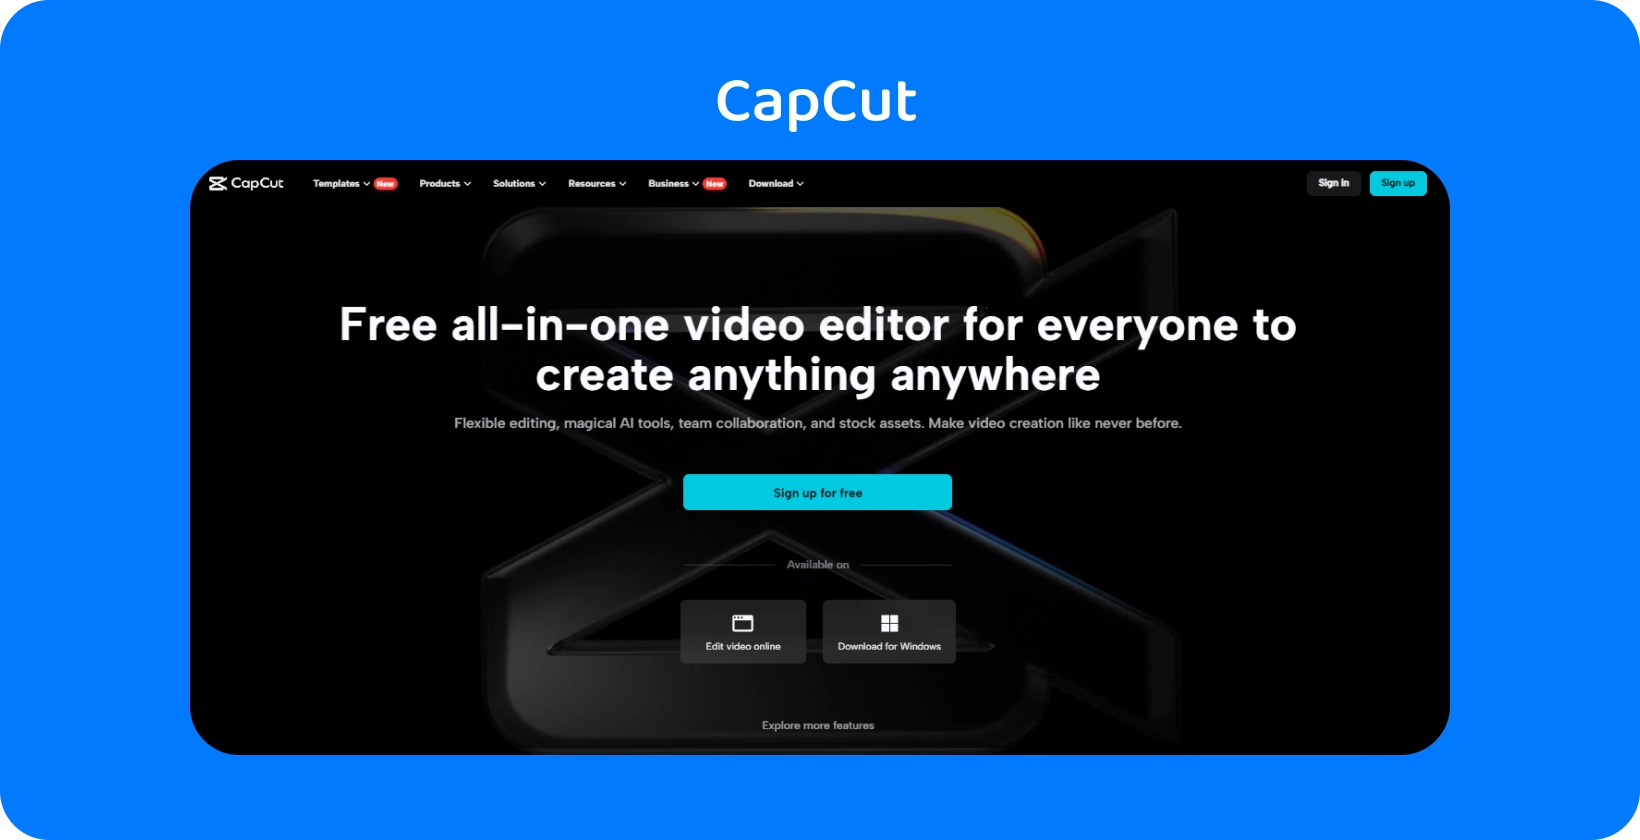 Strona główna CapCut prezentuje darmowy, wszechstronny edytor wideo do tworzenia treści na dowolnym urządzeniu, o ciemnym i eleganckim wyglądzie.
